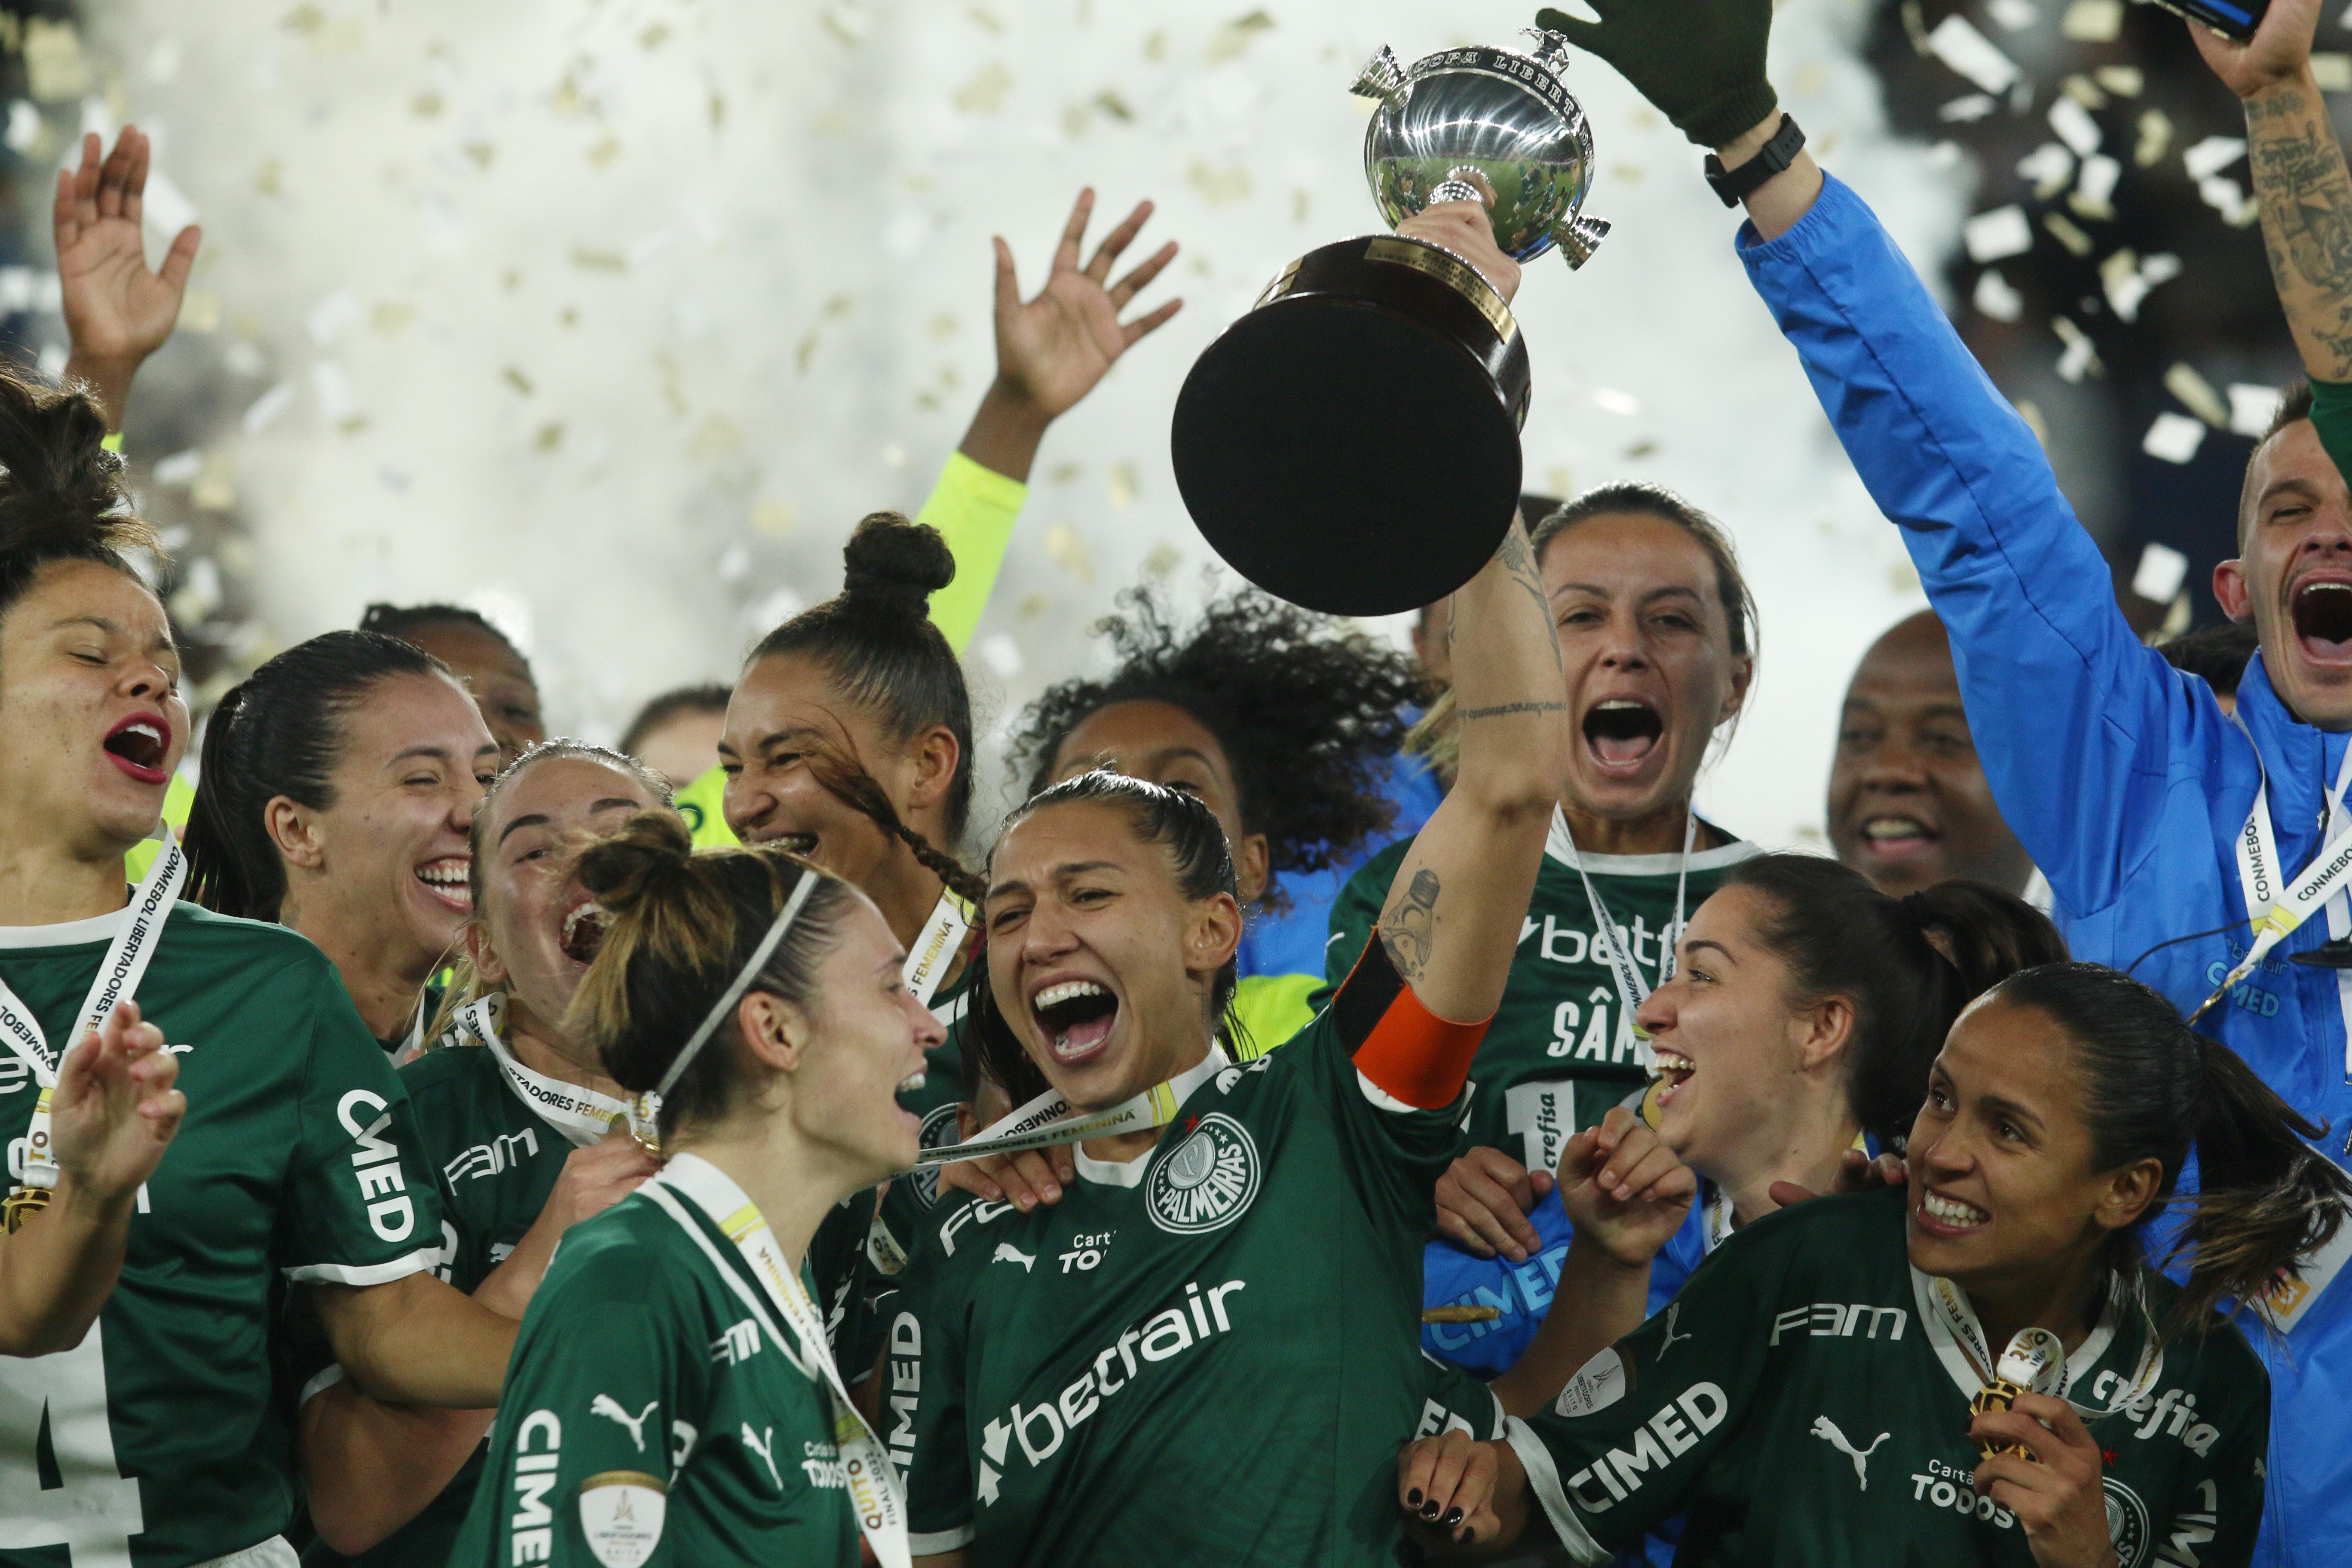 HISTÓRICO! Palestrinas superam Boca Juniors e conquistam título inédito da  Libertadores Feminina – Palmeiras